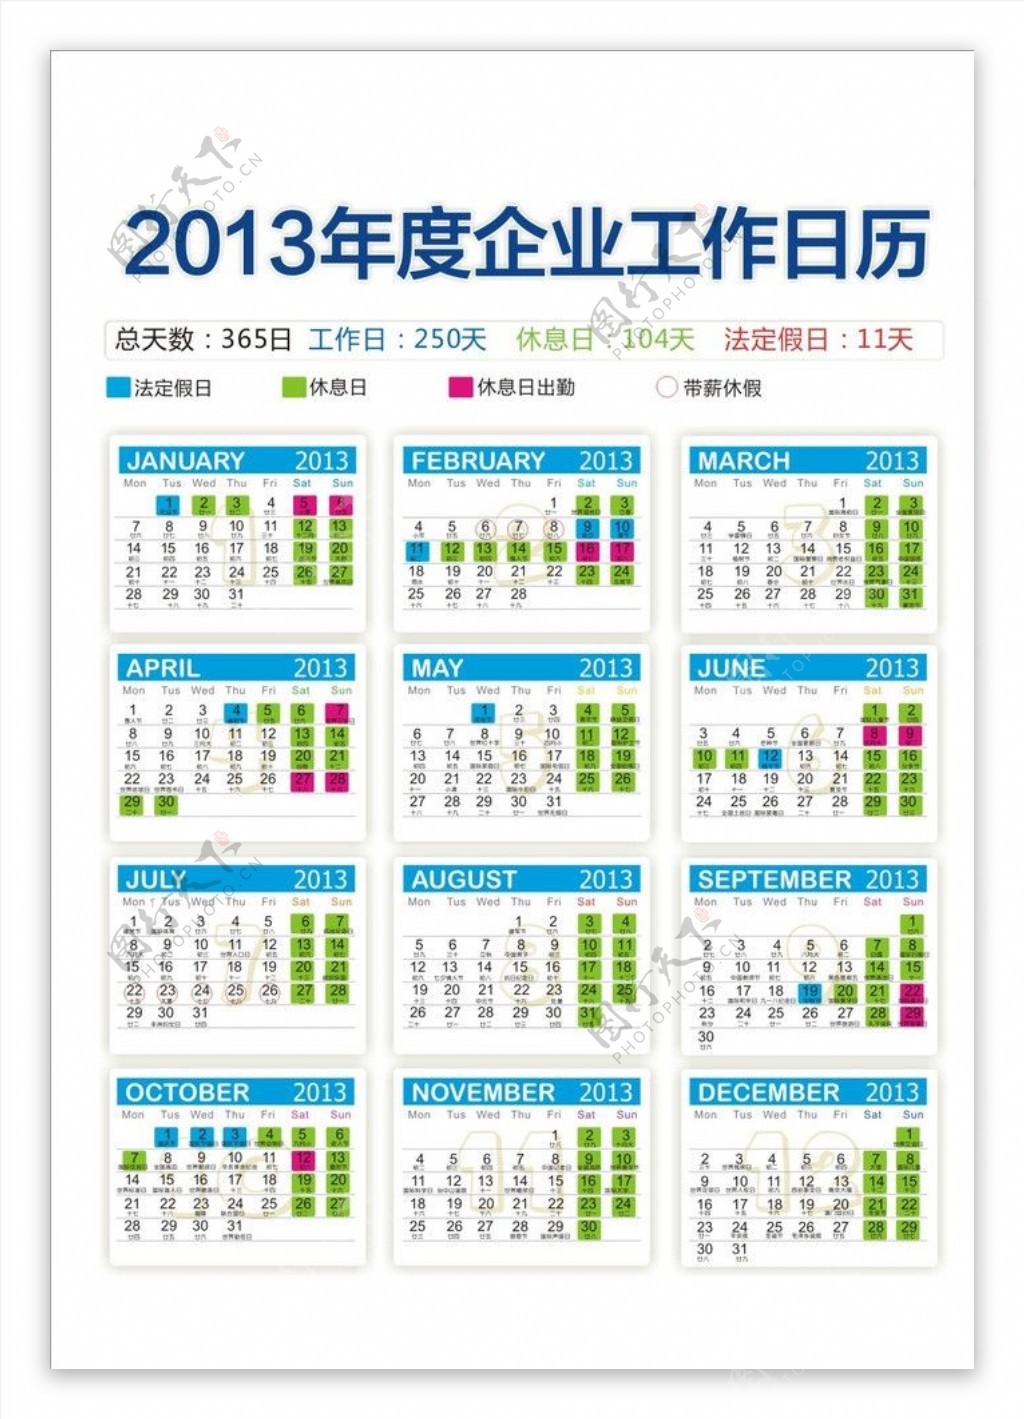 2013年度企业工作日历图片